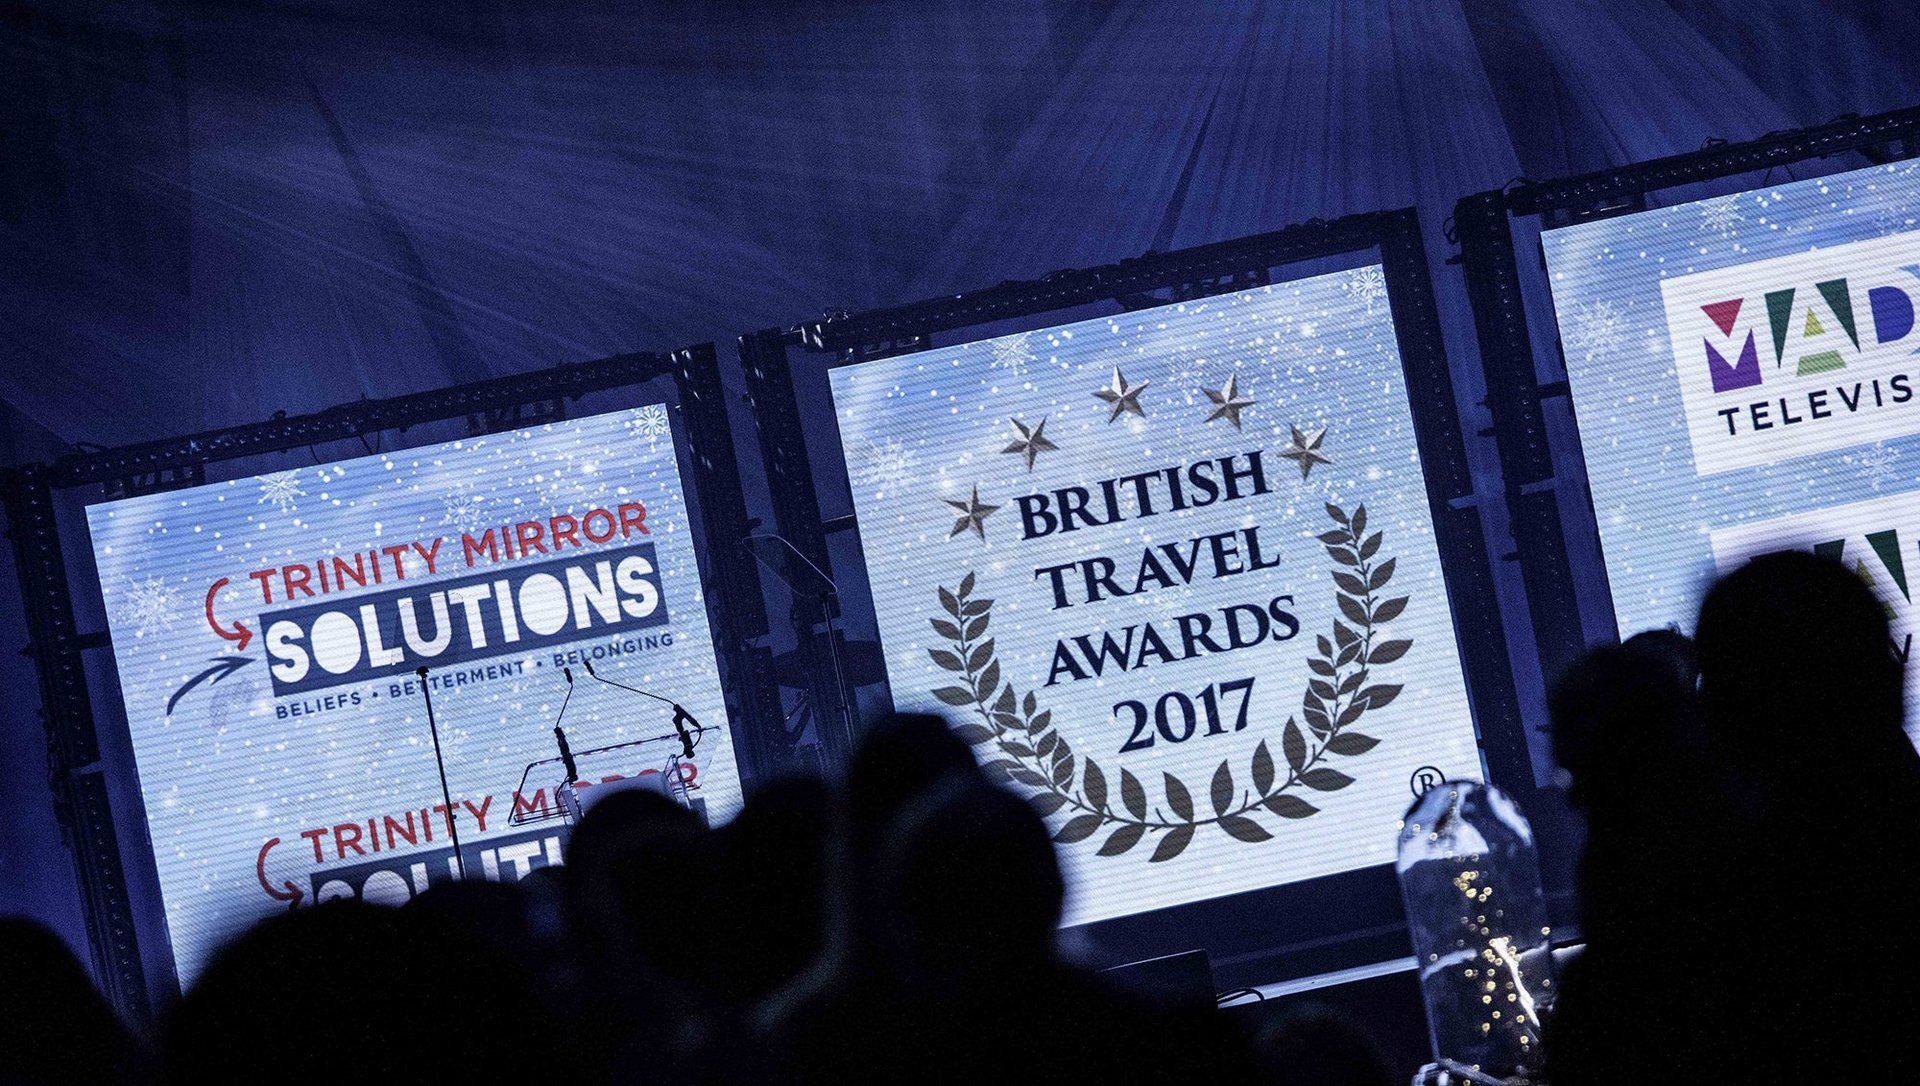 Brritish Travel Awards Stage LEDs